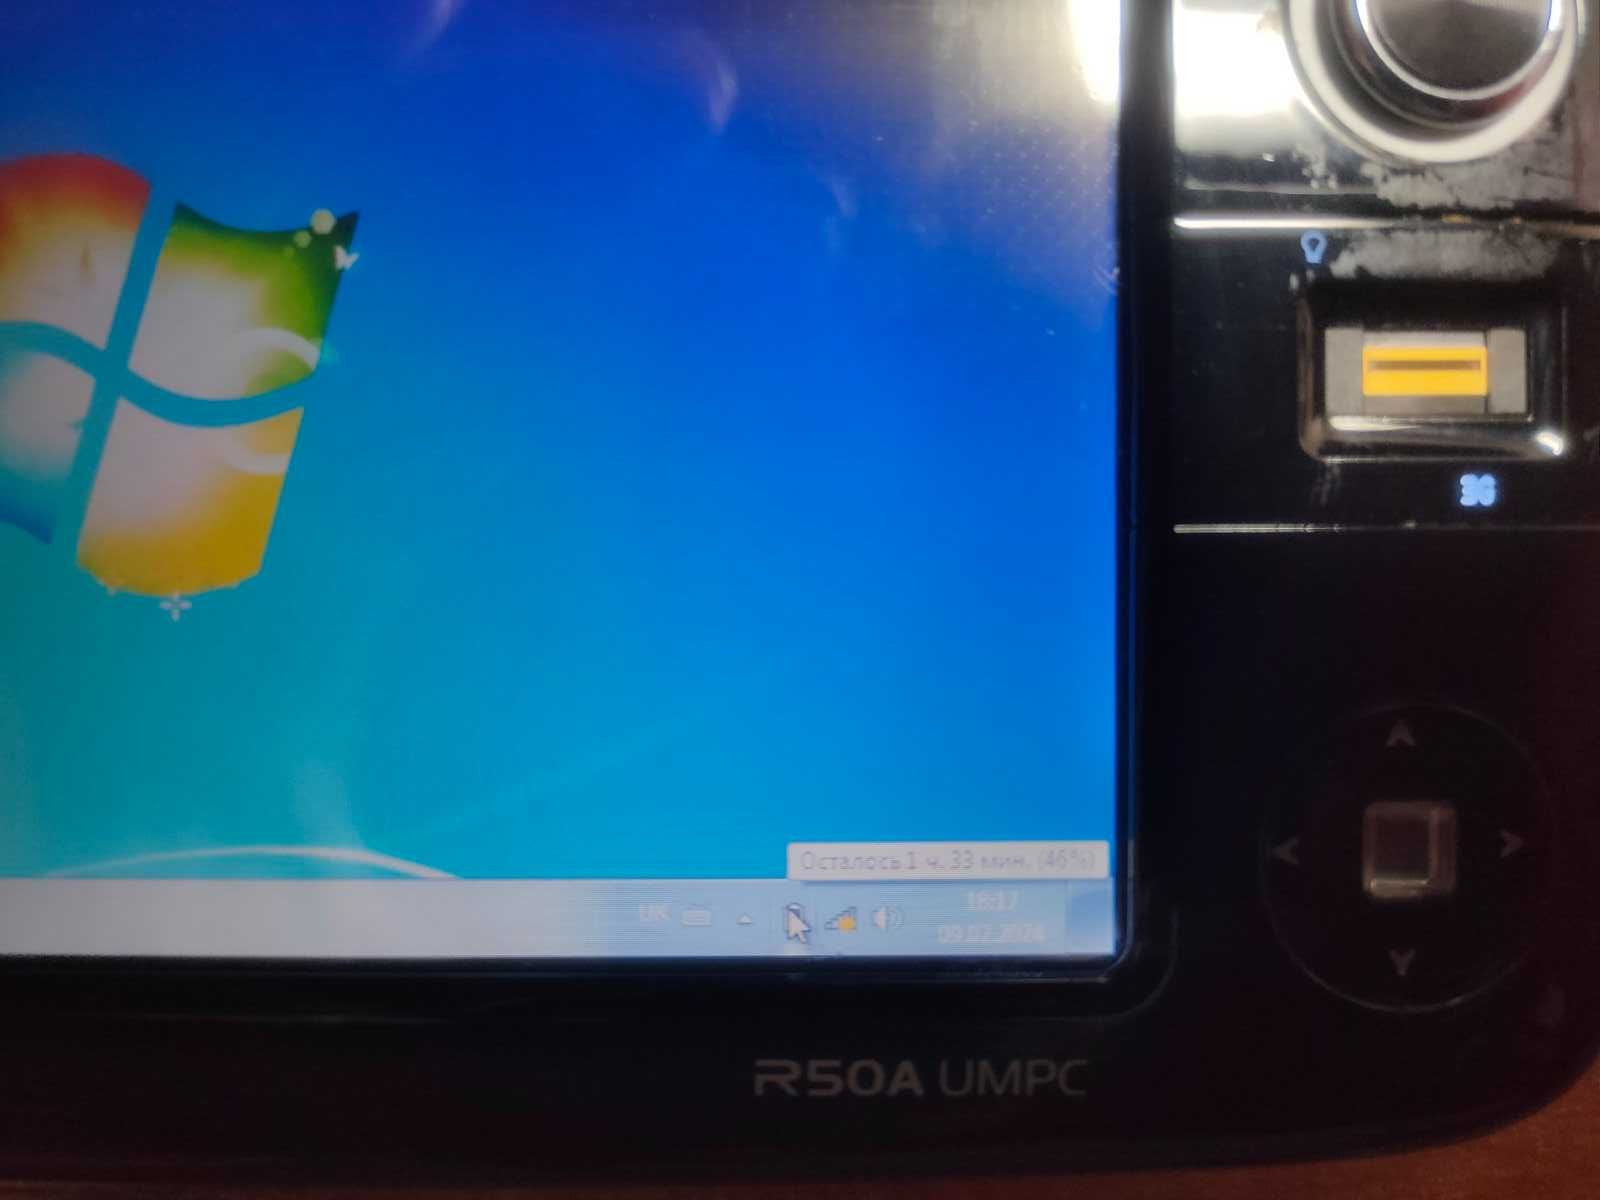 Asus R50A UMPC ультра мобільний персональний комп'ютер